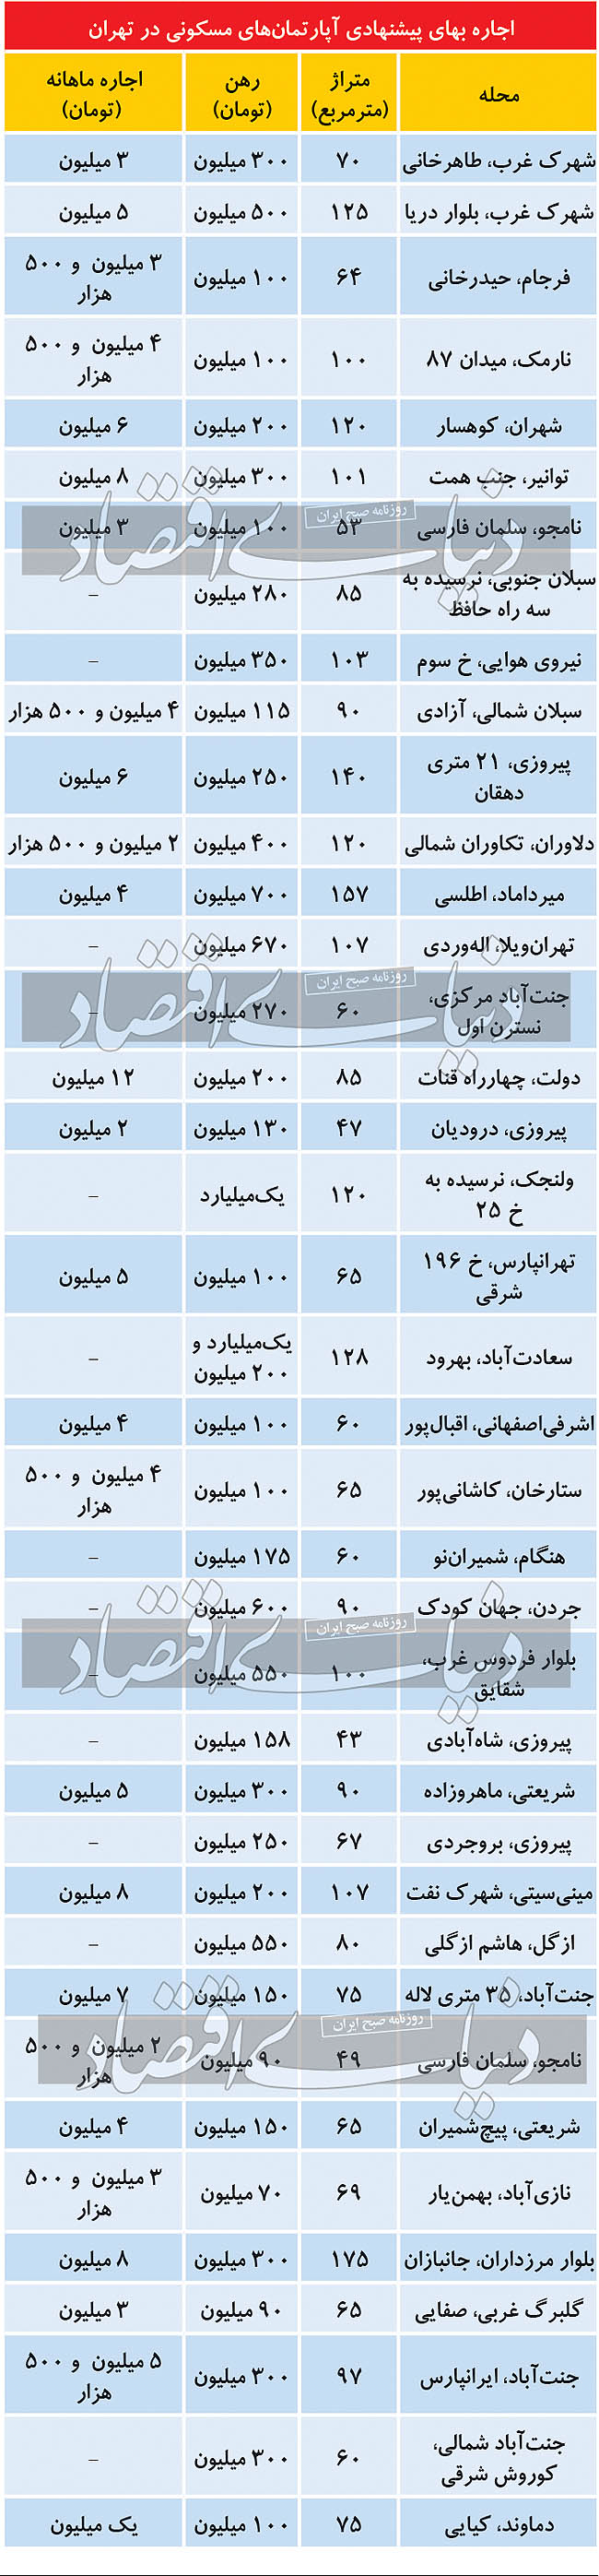 بررسی قیمت رهن و اجاره مسکن در مناطق مختلف تهران